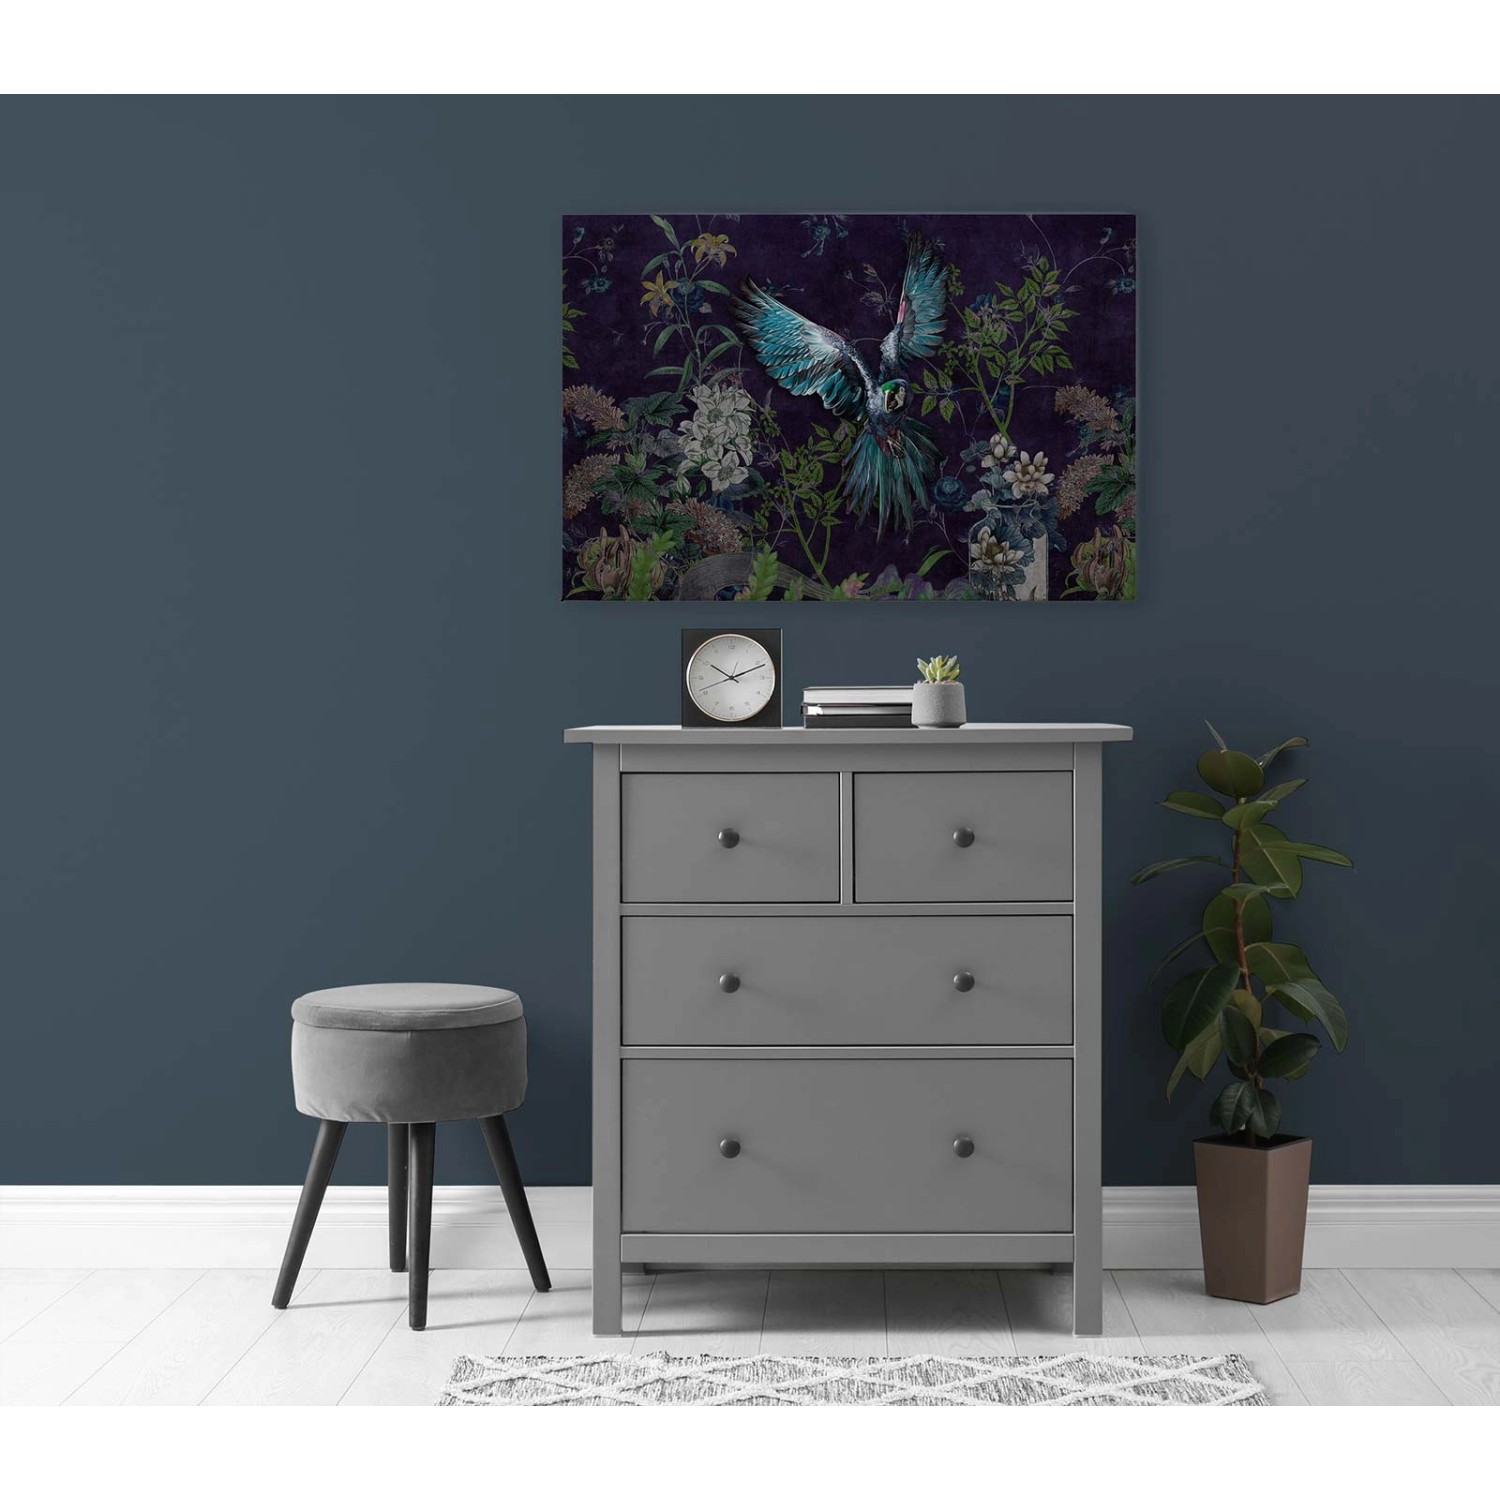 Bricoflor Papagei Bild Auf Leinwand Dunkelblau Dschungel Wandbild 120 X 80 Cm Leinwandbild Mit Vogel Und Blumen Für Schl